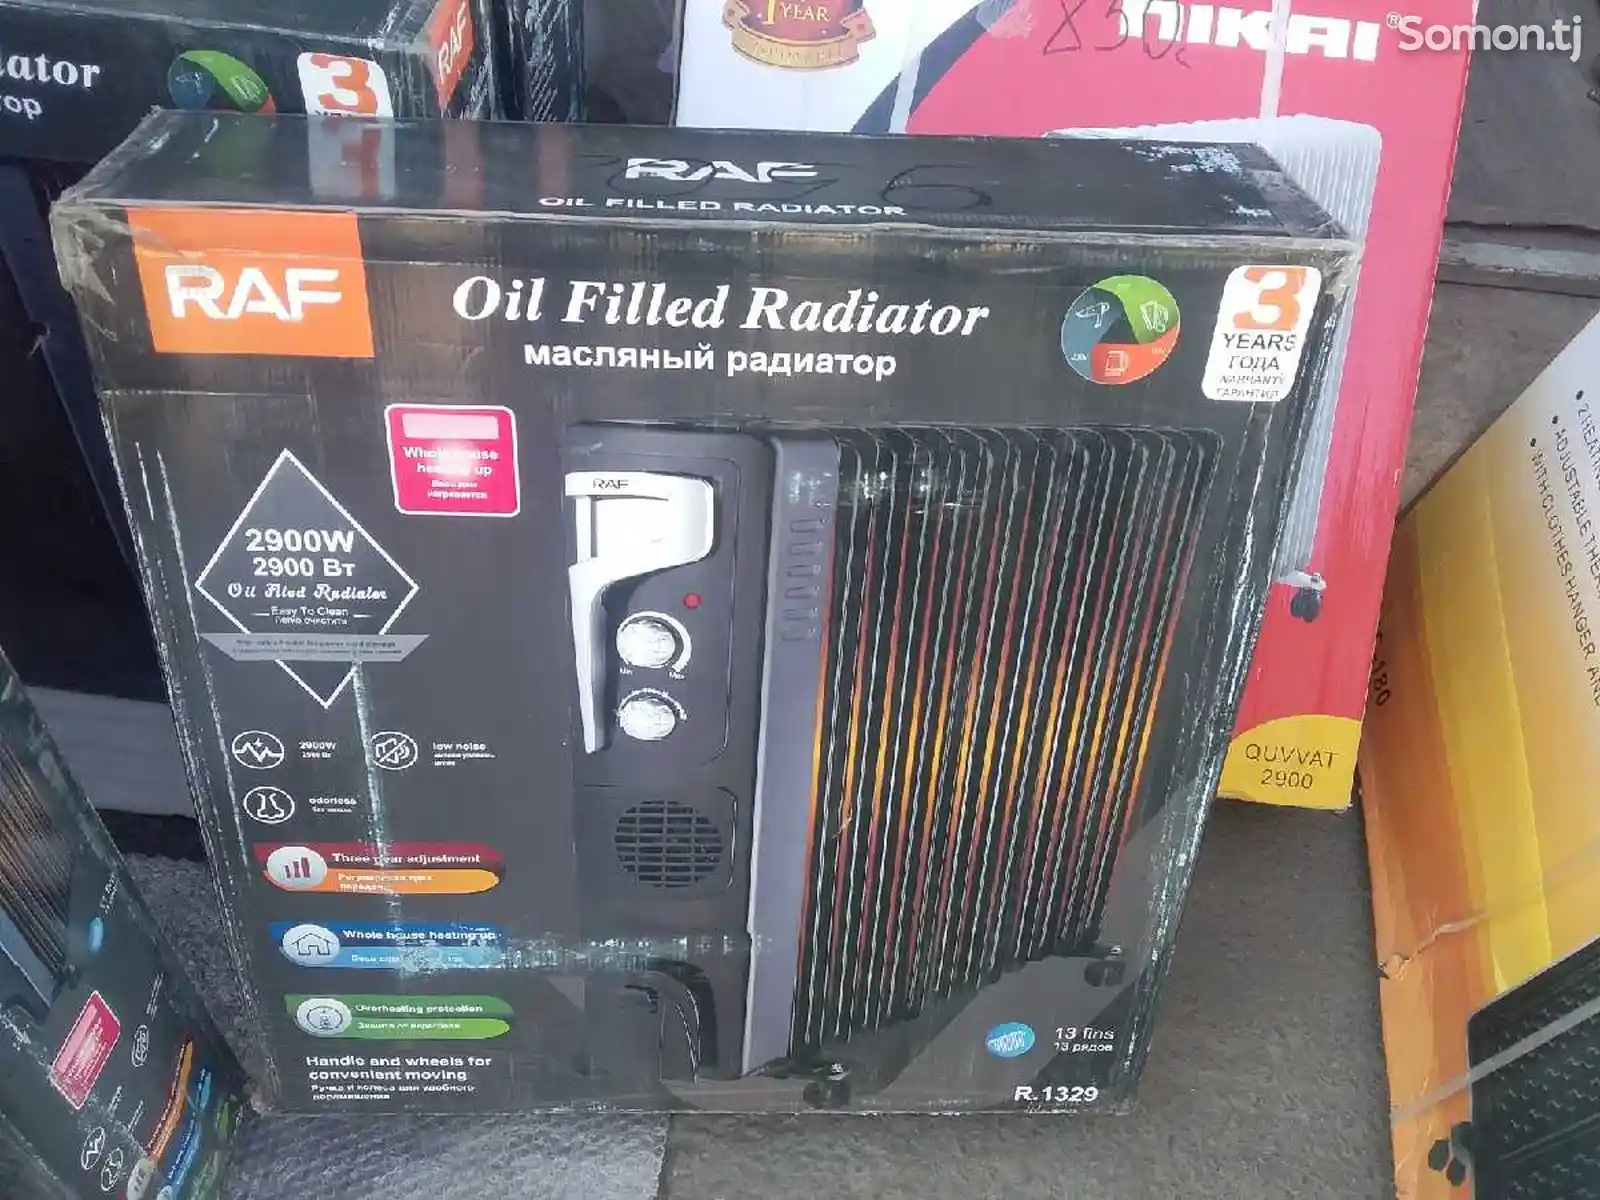 Радиатор RAF